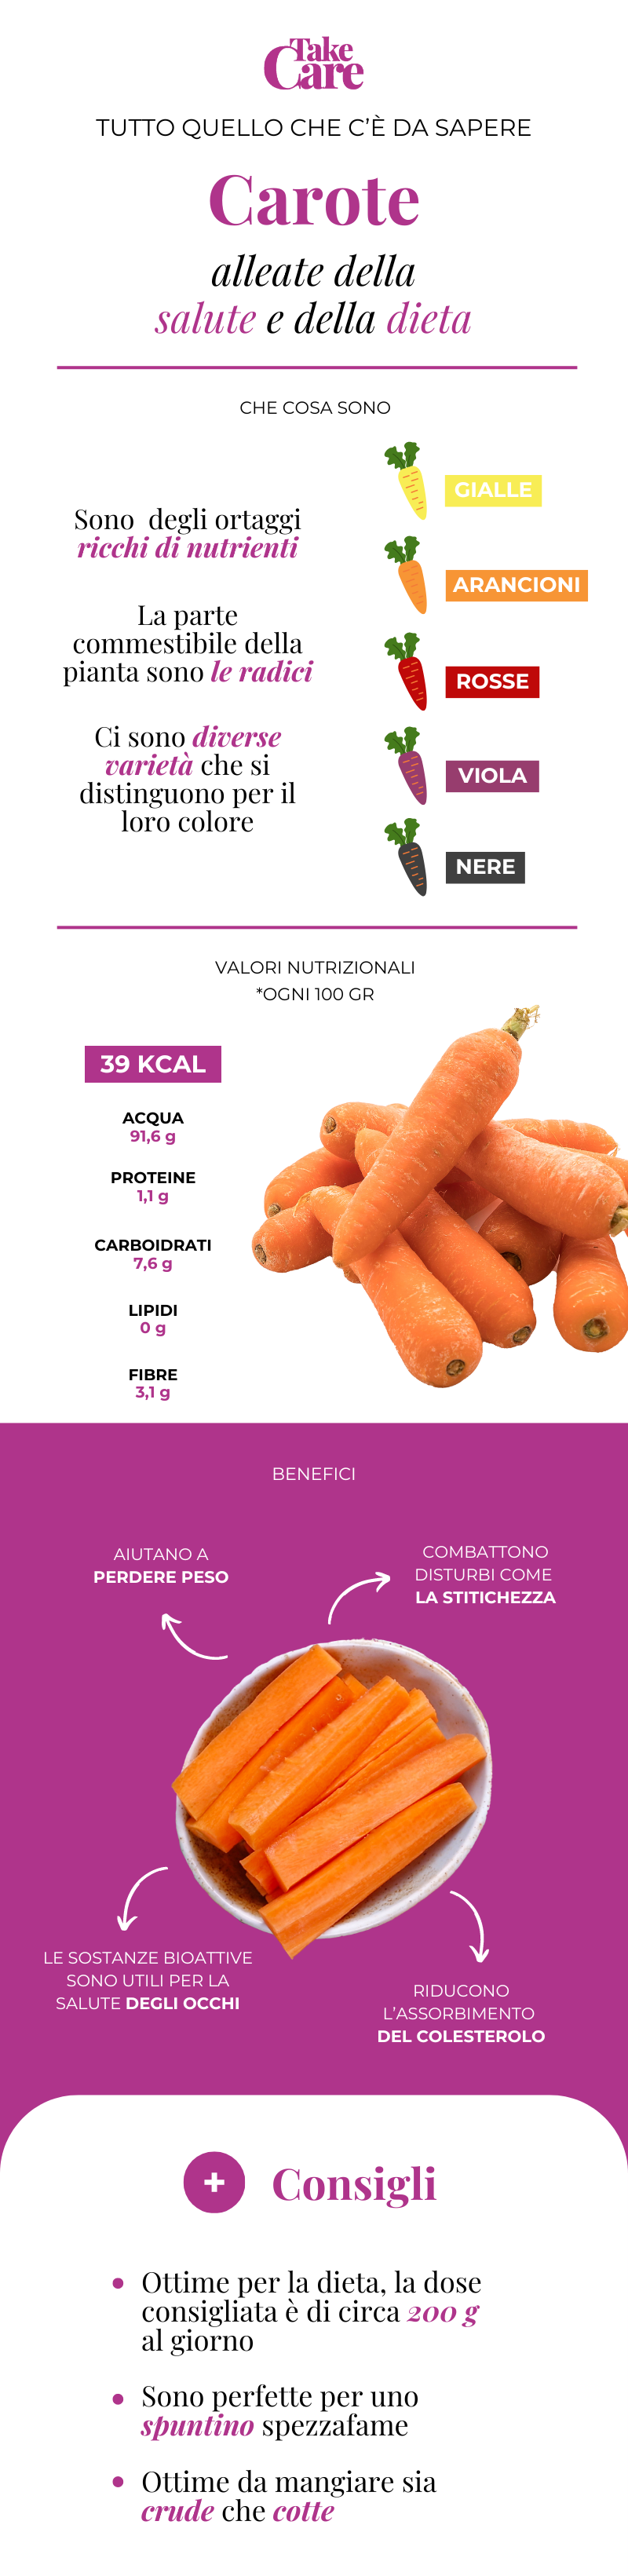 Infografica sulle carote